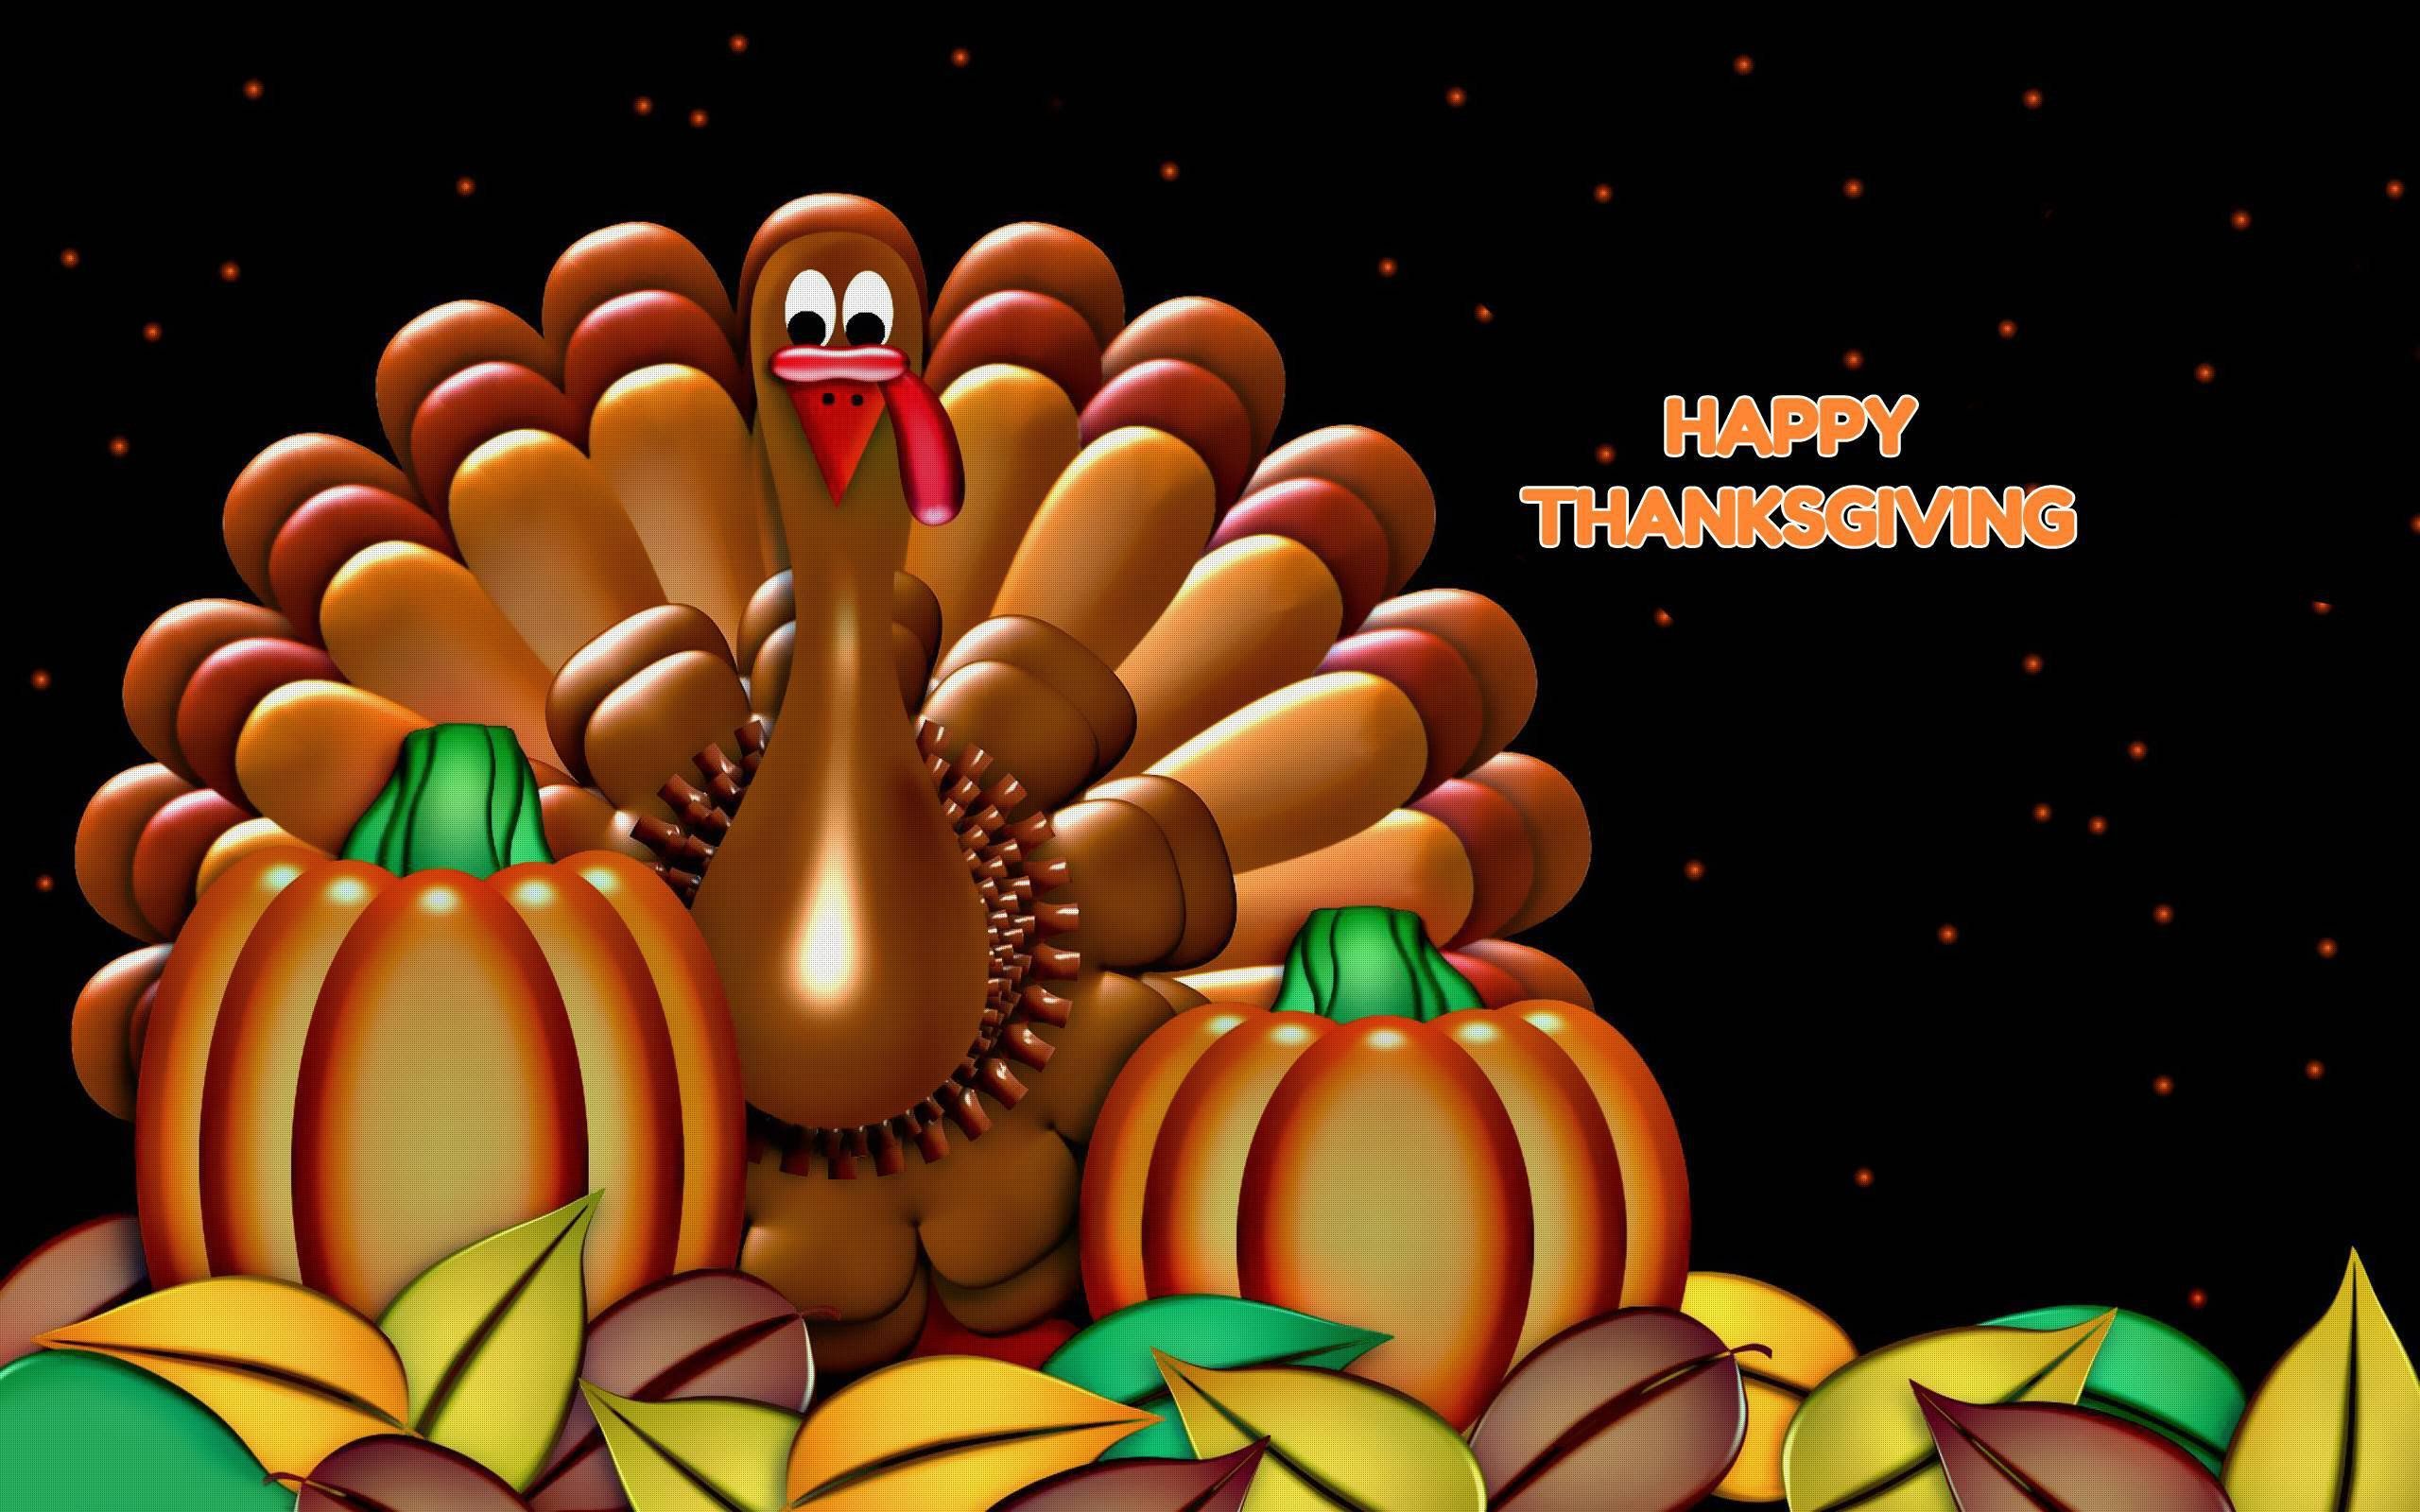 3D Thanksgiving Wallpaper HD. Thanksgiving wallpaper, Happy thanksgiving wallpaper, Free thanksgiving wallpaper